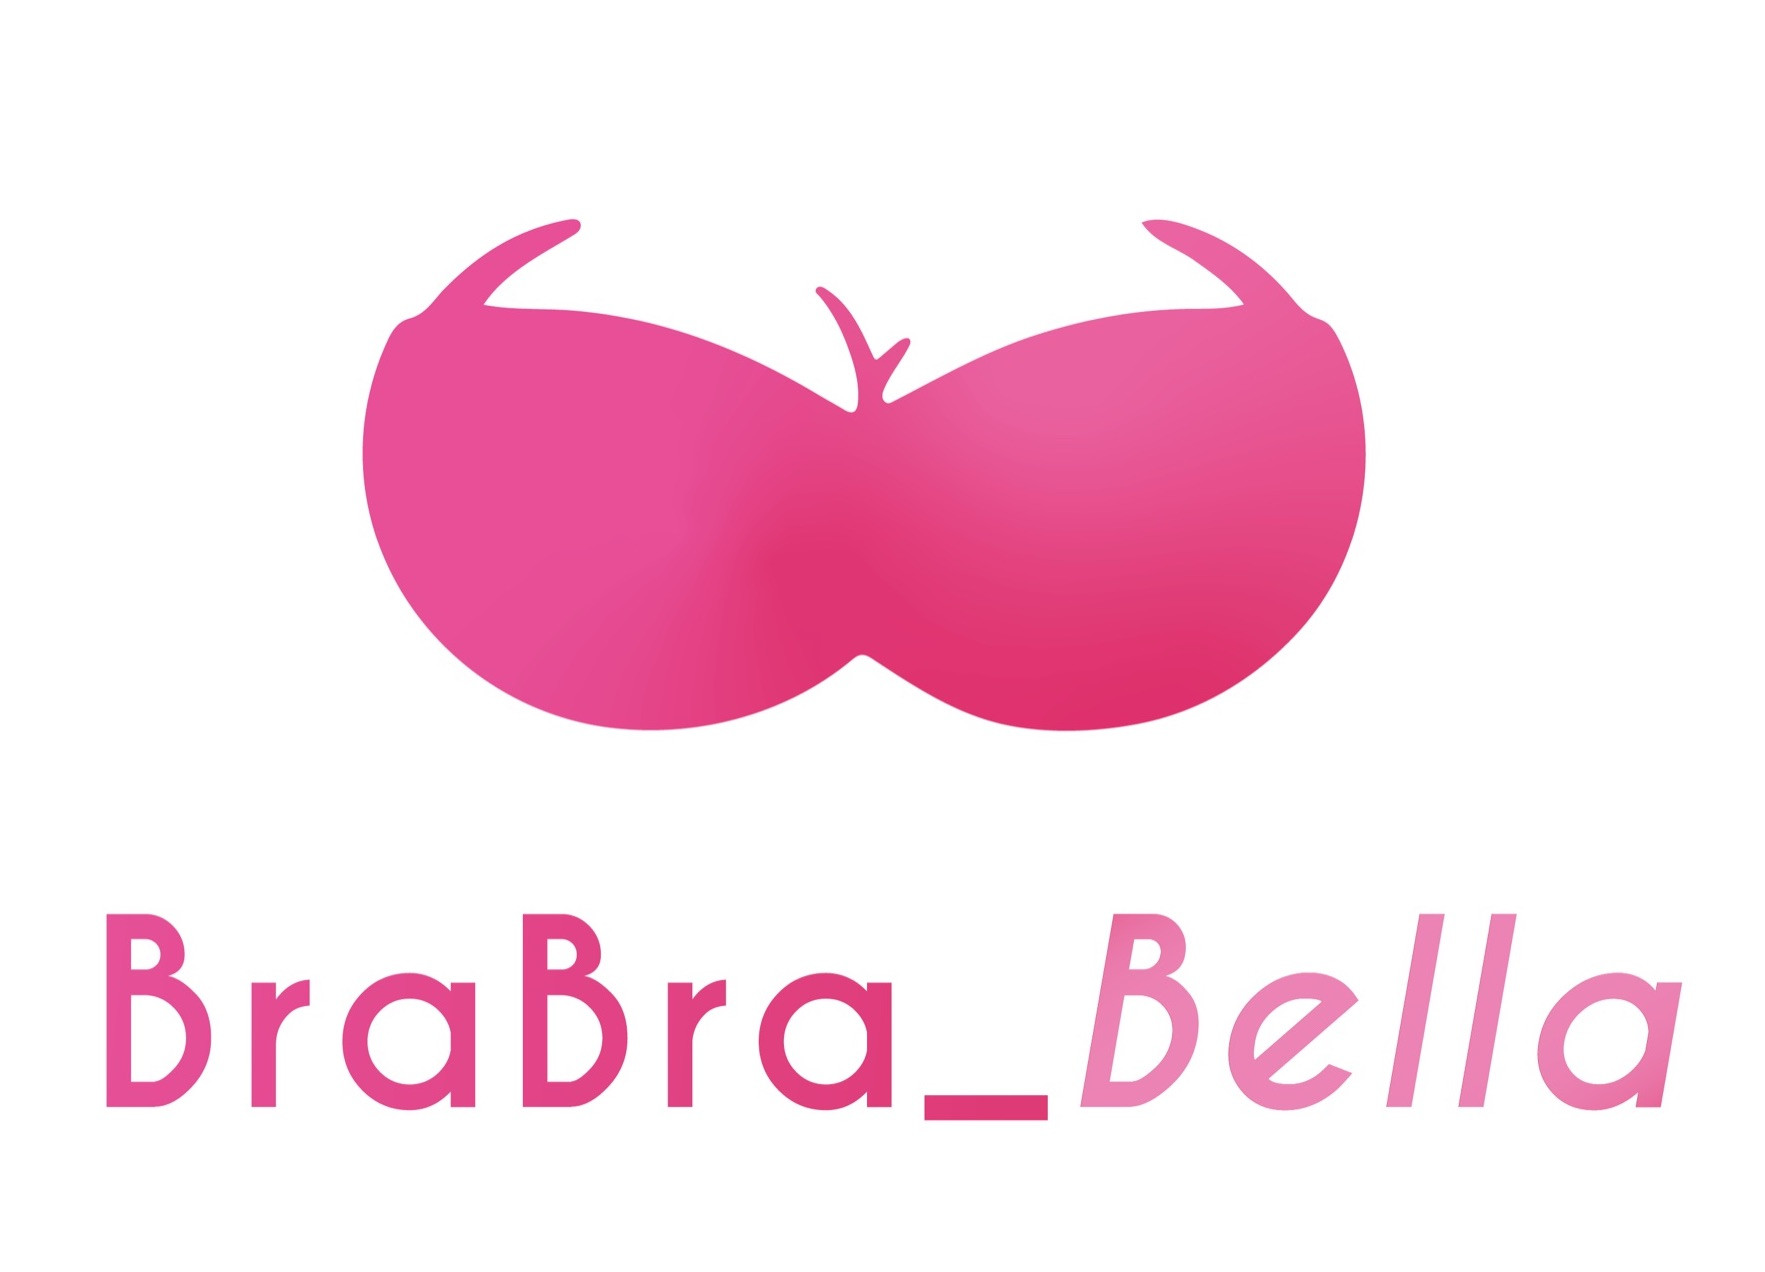 BraBraBella